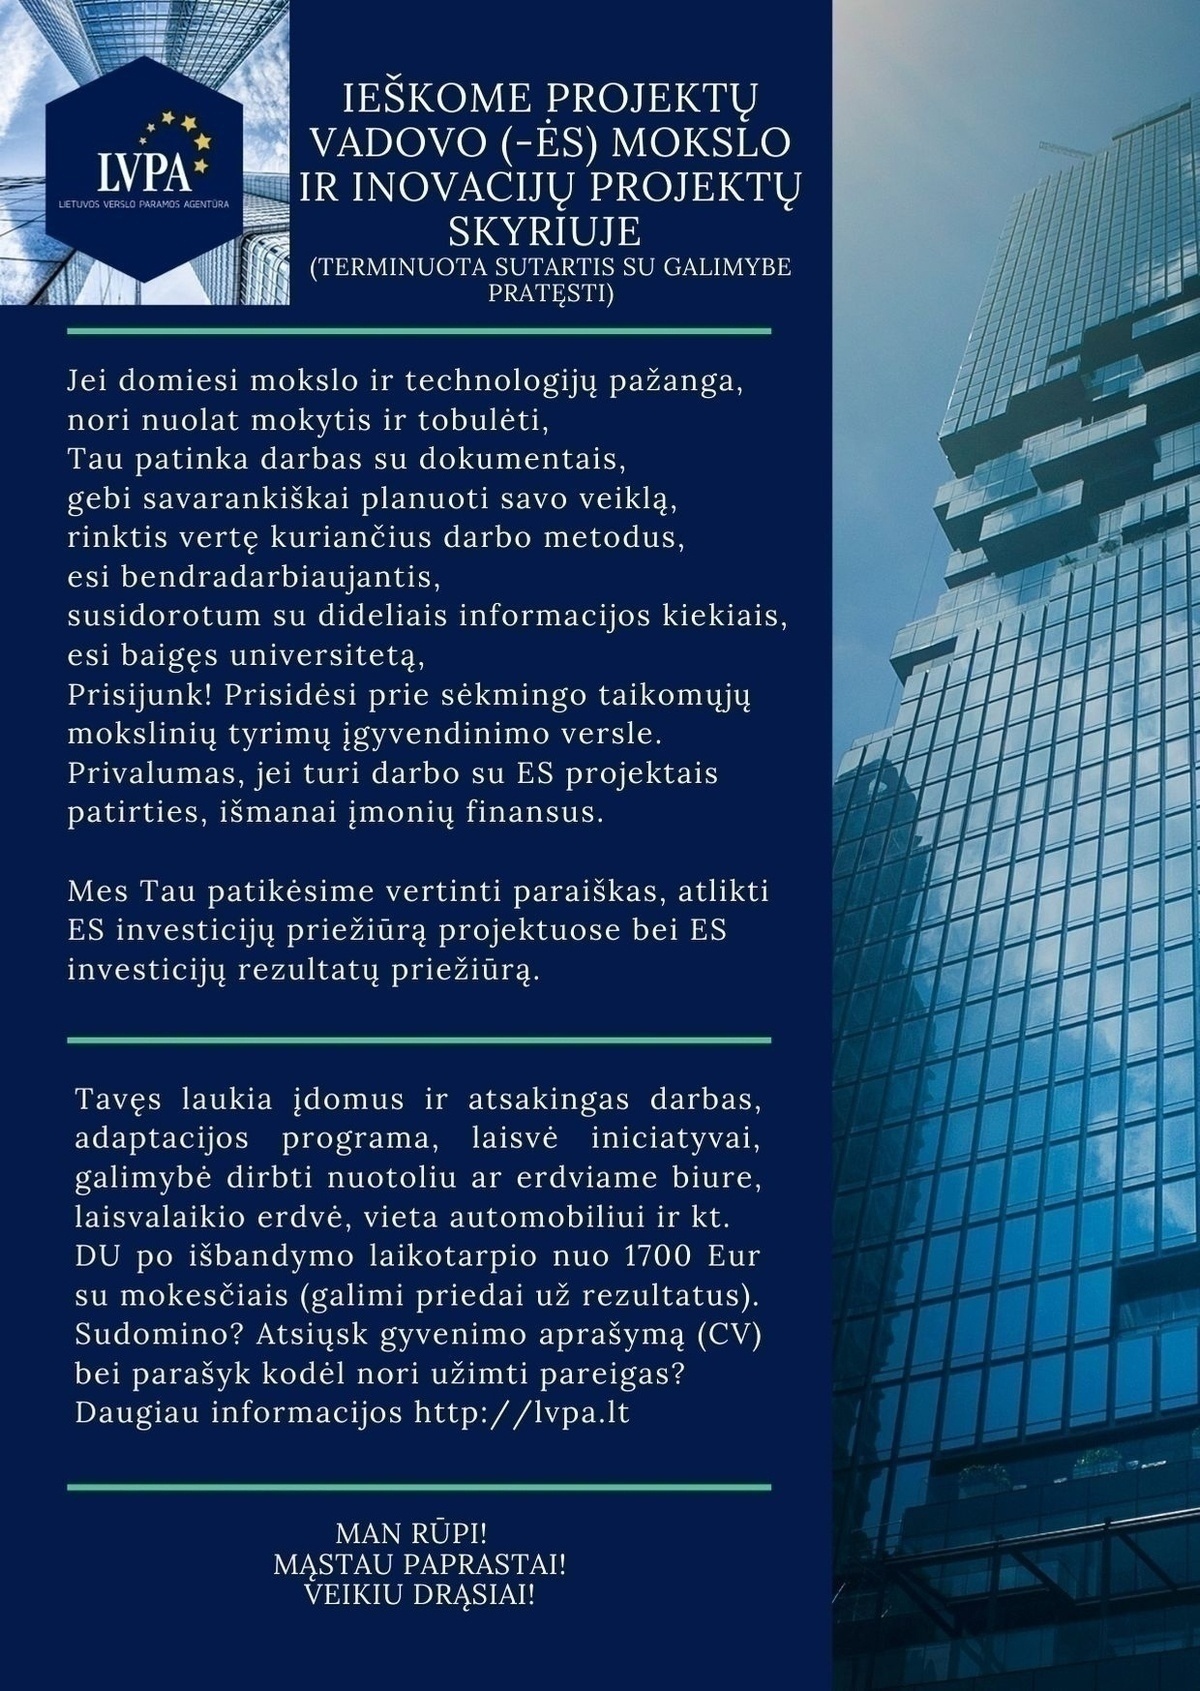 Lietuvos verslo paramos agentūra, VšĮ Projektų vadovas (-ė) Mokslo ir inovacijų projektų skyriuje (darbas pagal terminuotą darbo sutartį su galimybe pratęsti)